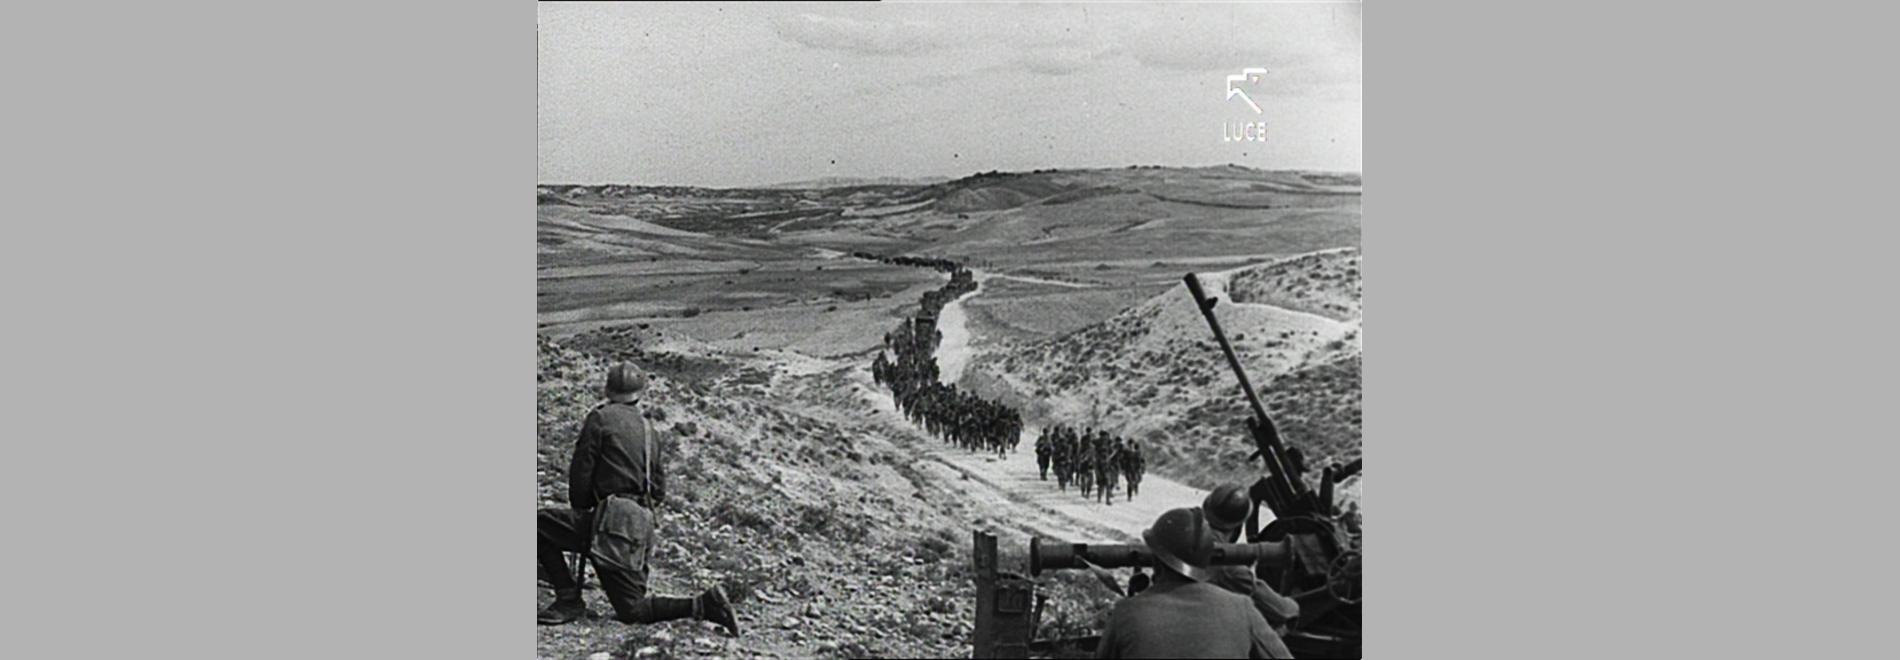 Els documentals de la Itàlia feixista sobre la Guerra Civil Espanyola (1936-1939) - Sessió 1 (1936-1938)